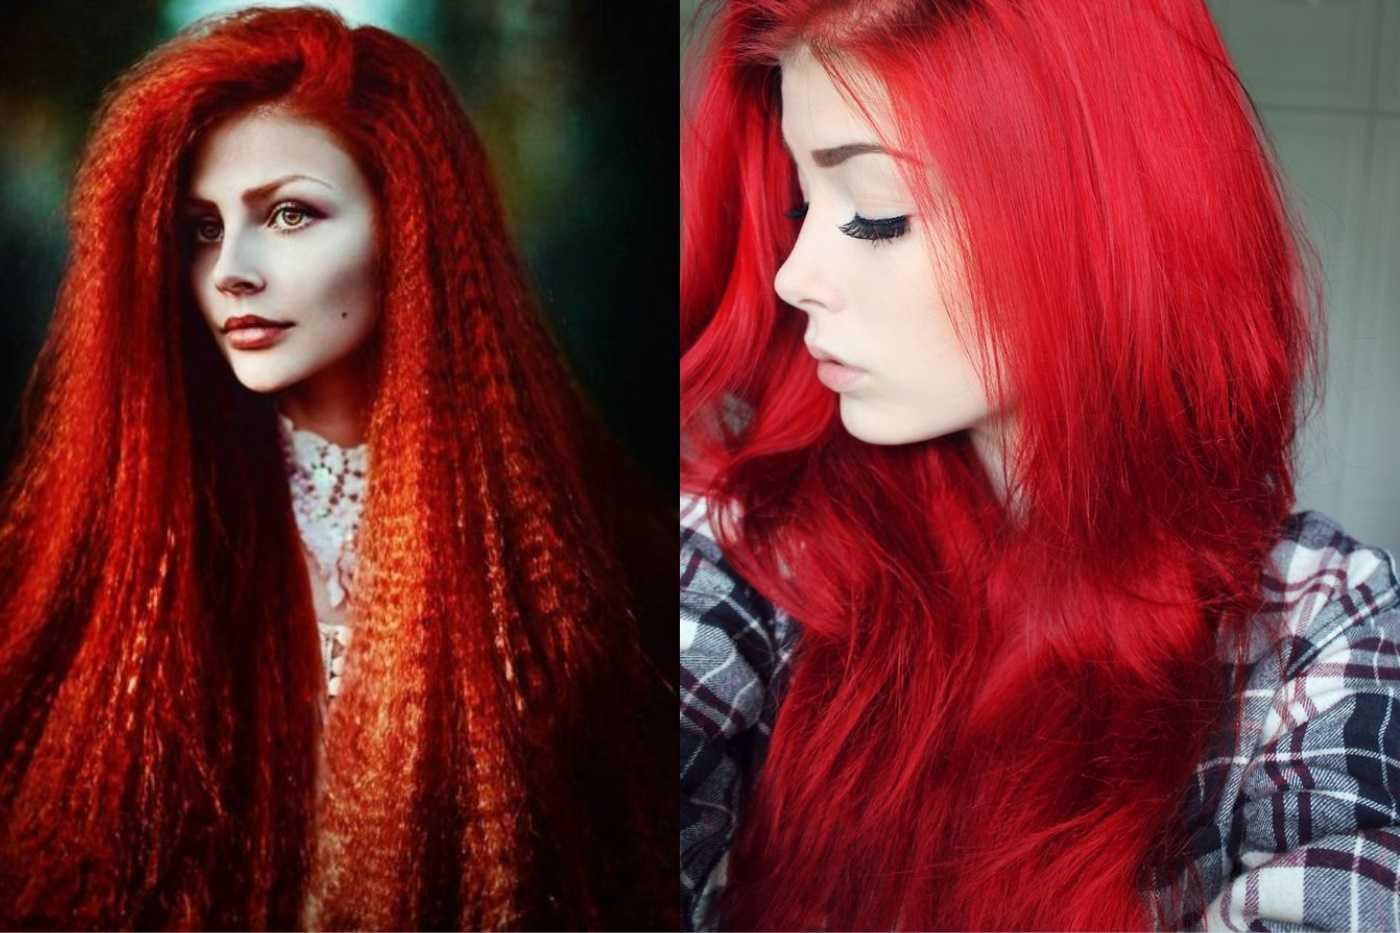 Рыжий цвет волос | волосомагия